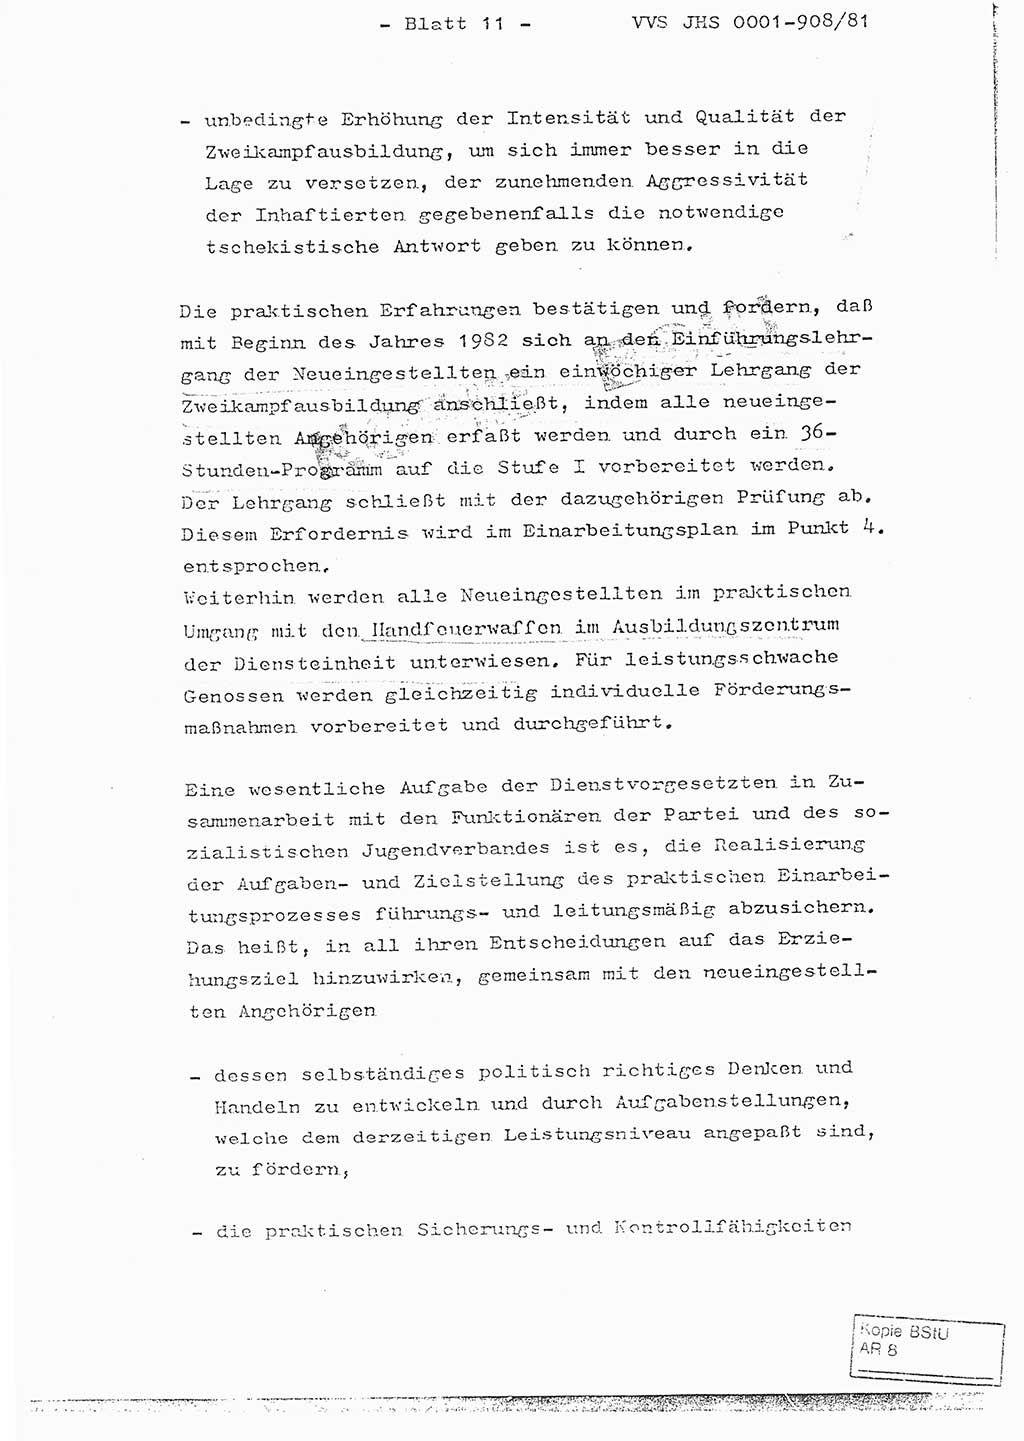 Fachschulabschlußarbeit Oberleutnant Wolfgang Wittmann (Abt. ⅩⅣ), Ministerium für Staatssicherheit (MfS) [Deutsche Demokratische Republik (DDR)], Juristische Hochschule (JHS), Vertrauliche Verschlußsache (VVS) o001-908/82, Potsdam 1982, Blatt 11 (FS-Abschl.-Arb. MfS DDR JHS VVS o001-908/82 1982, Bl. 11)